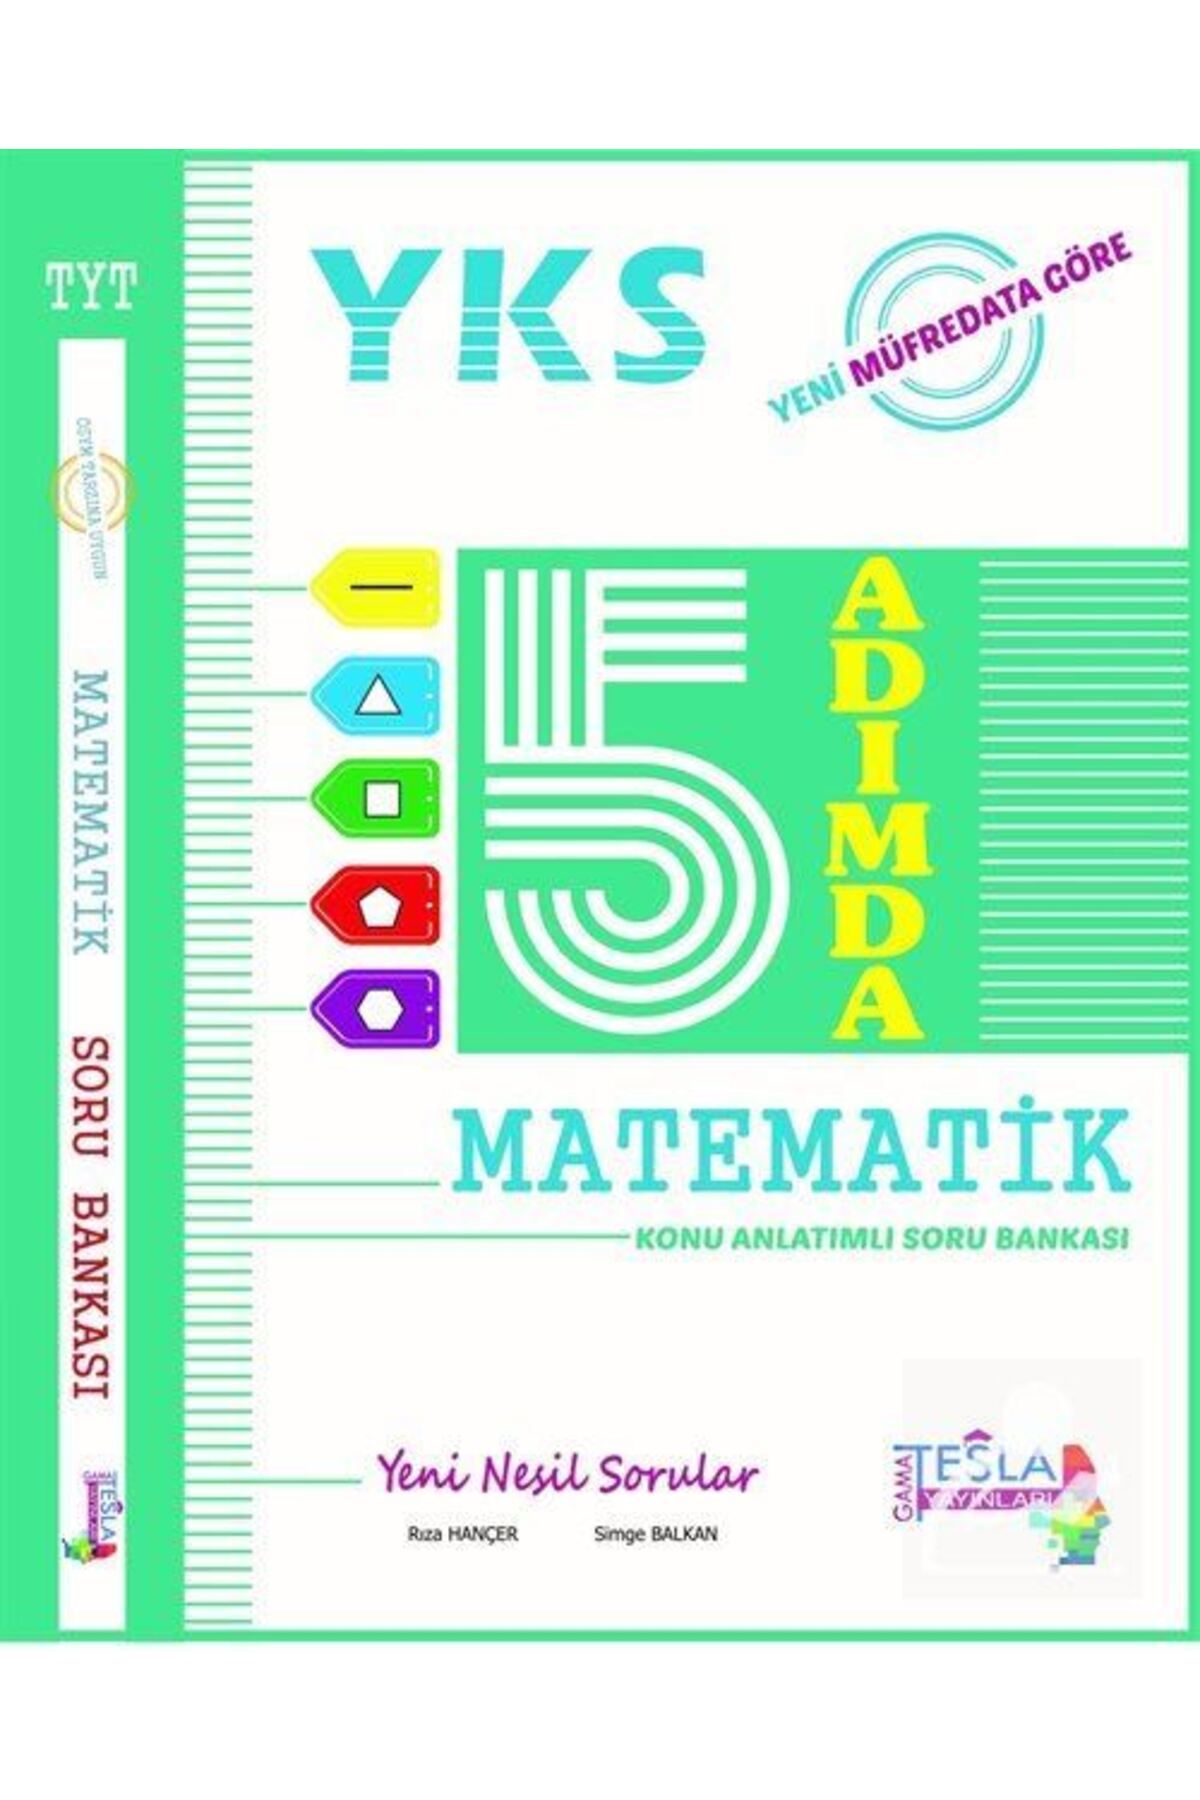 Gamatesla Yayınları Tyt 5 Adımda Matematik Konu Anlatımlı Soru Bankası